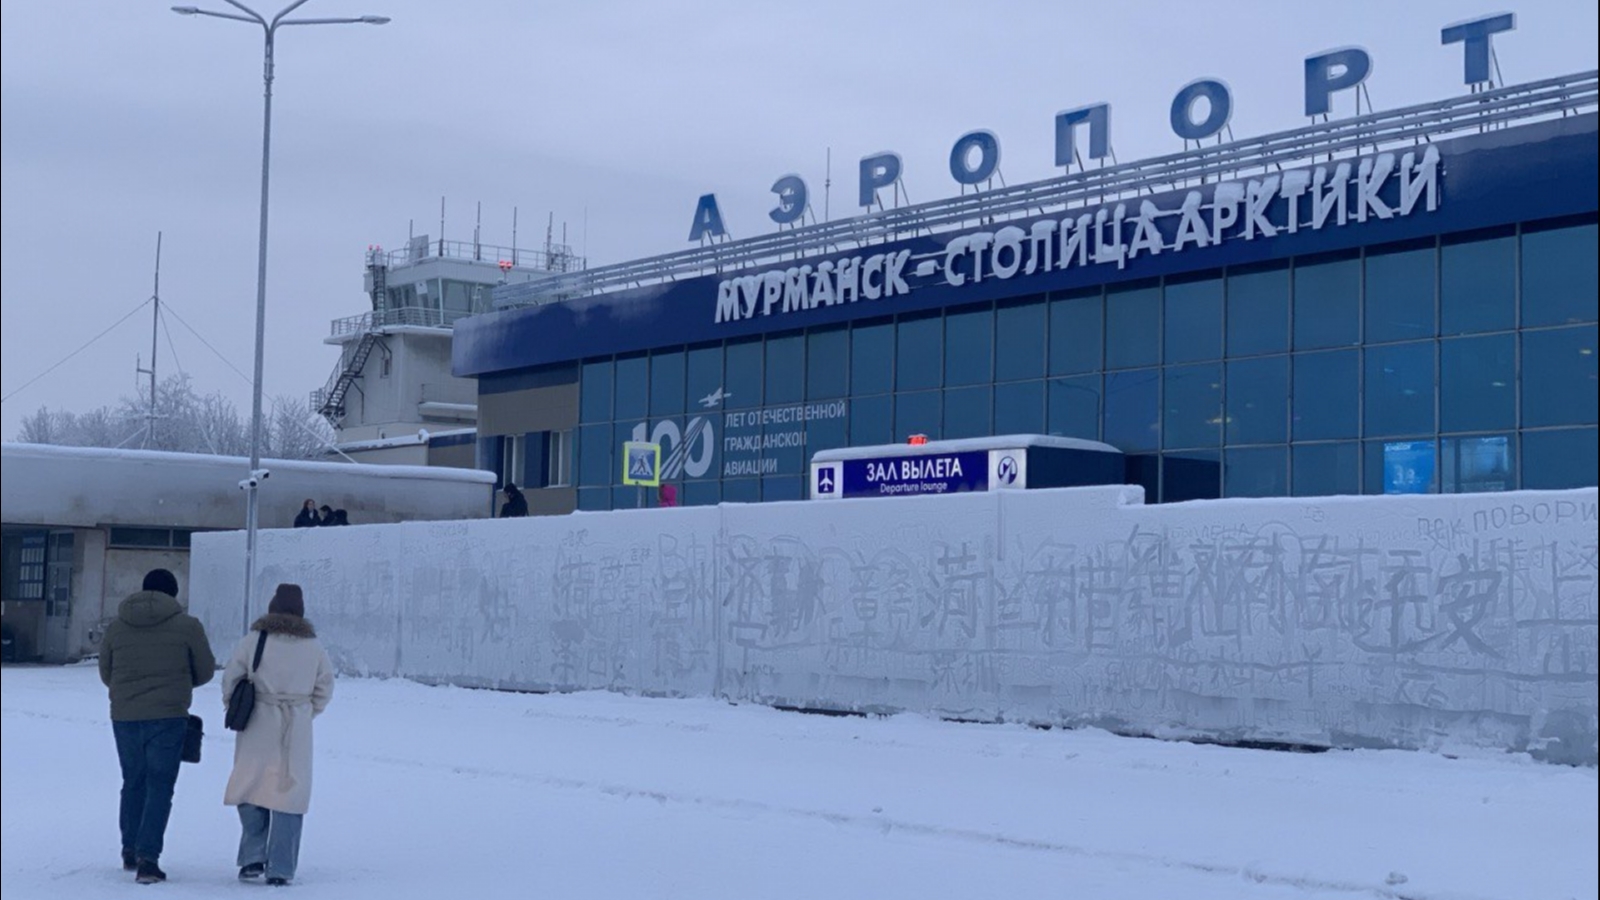 Аэропорт Мурманск: С проблемами в бизнес-зале и надеждами для людей и крабов